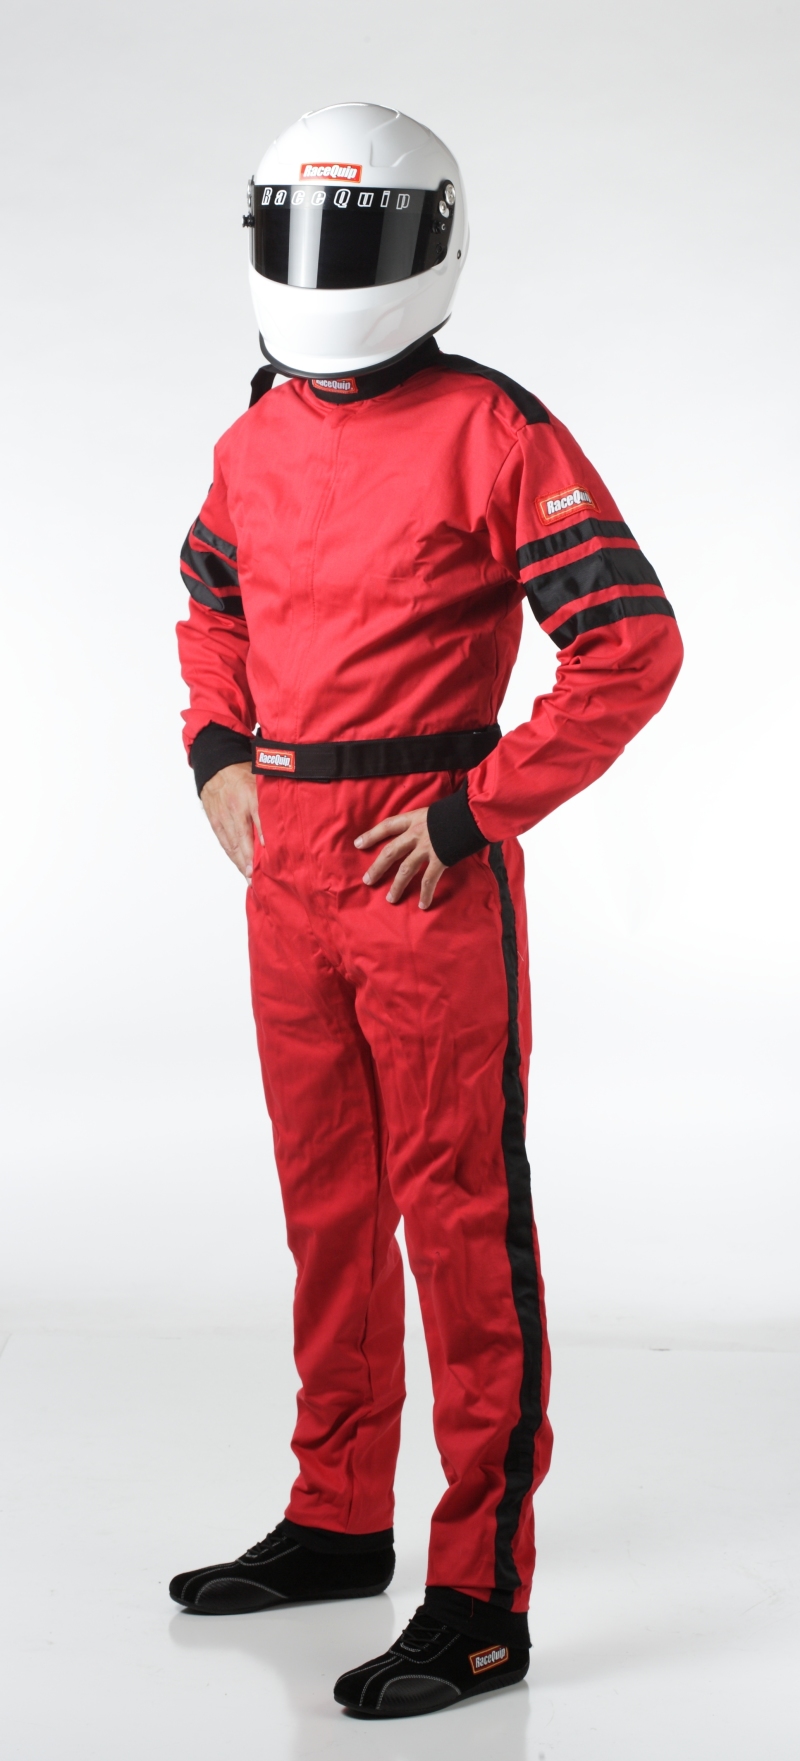 RaceQuip Red SFI-1 1-L Suit - Medium Tall - 110014